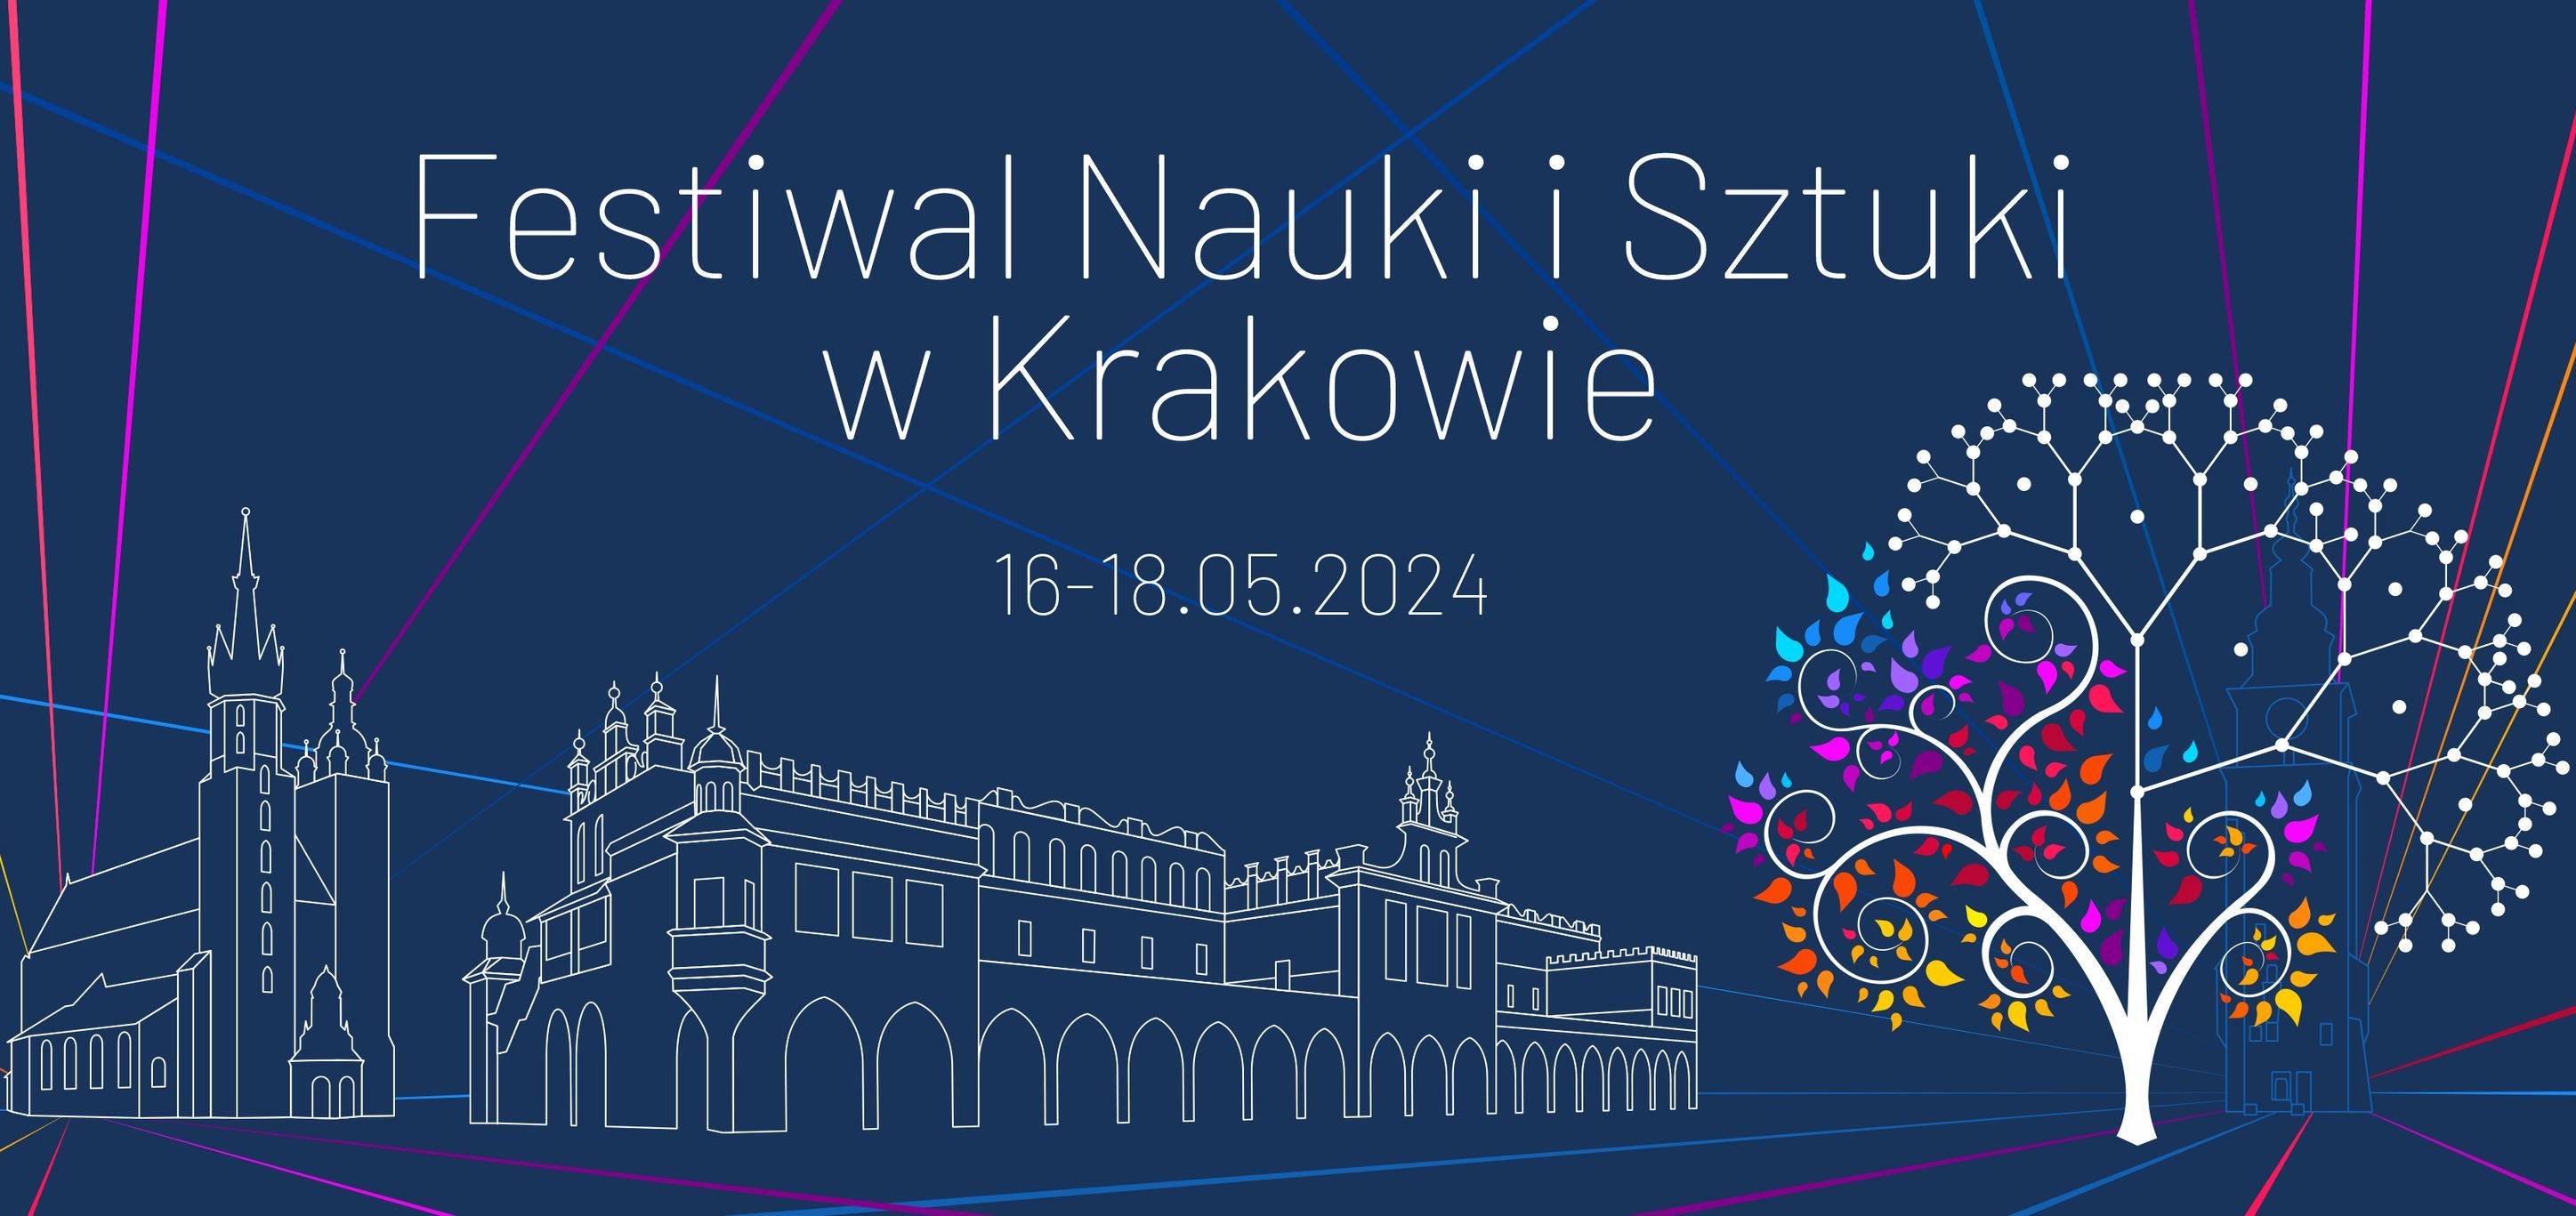 Zapraszamy do udziału w Festiwalu Nauki i Sztuki w Krakowie na Uniwersytecie Jagiellońskim